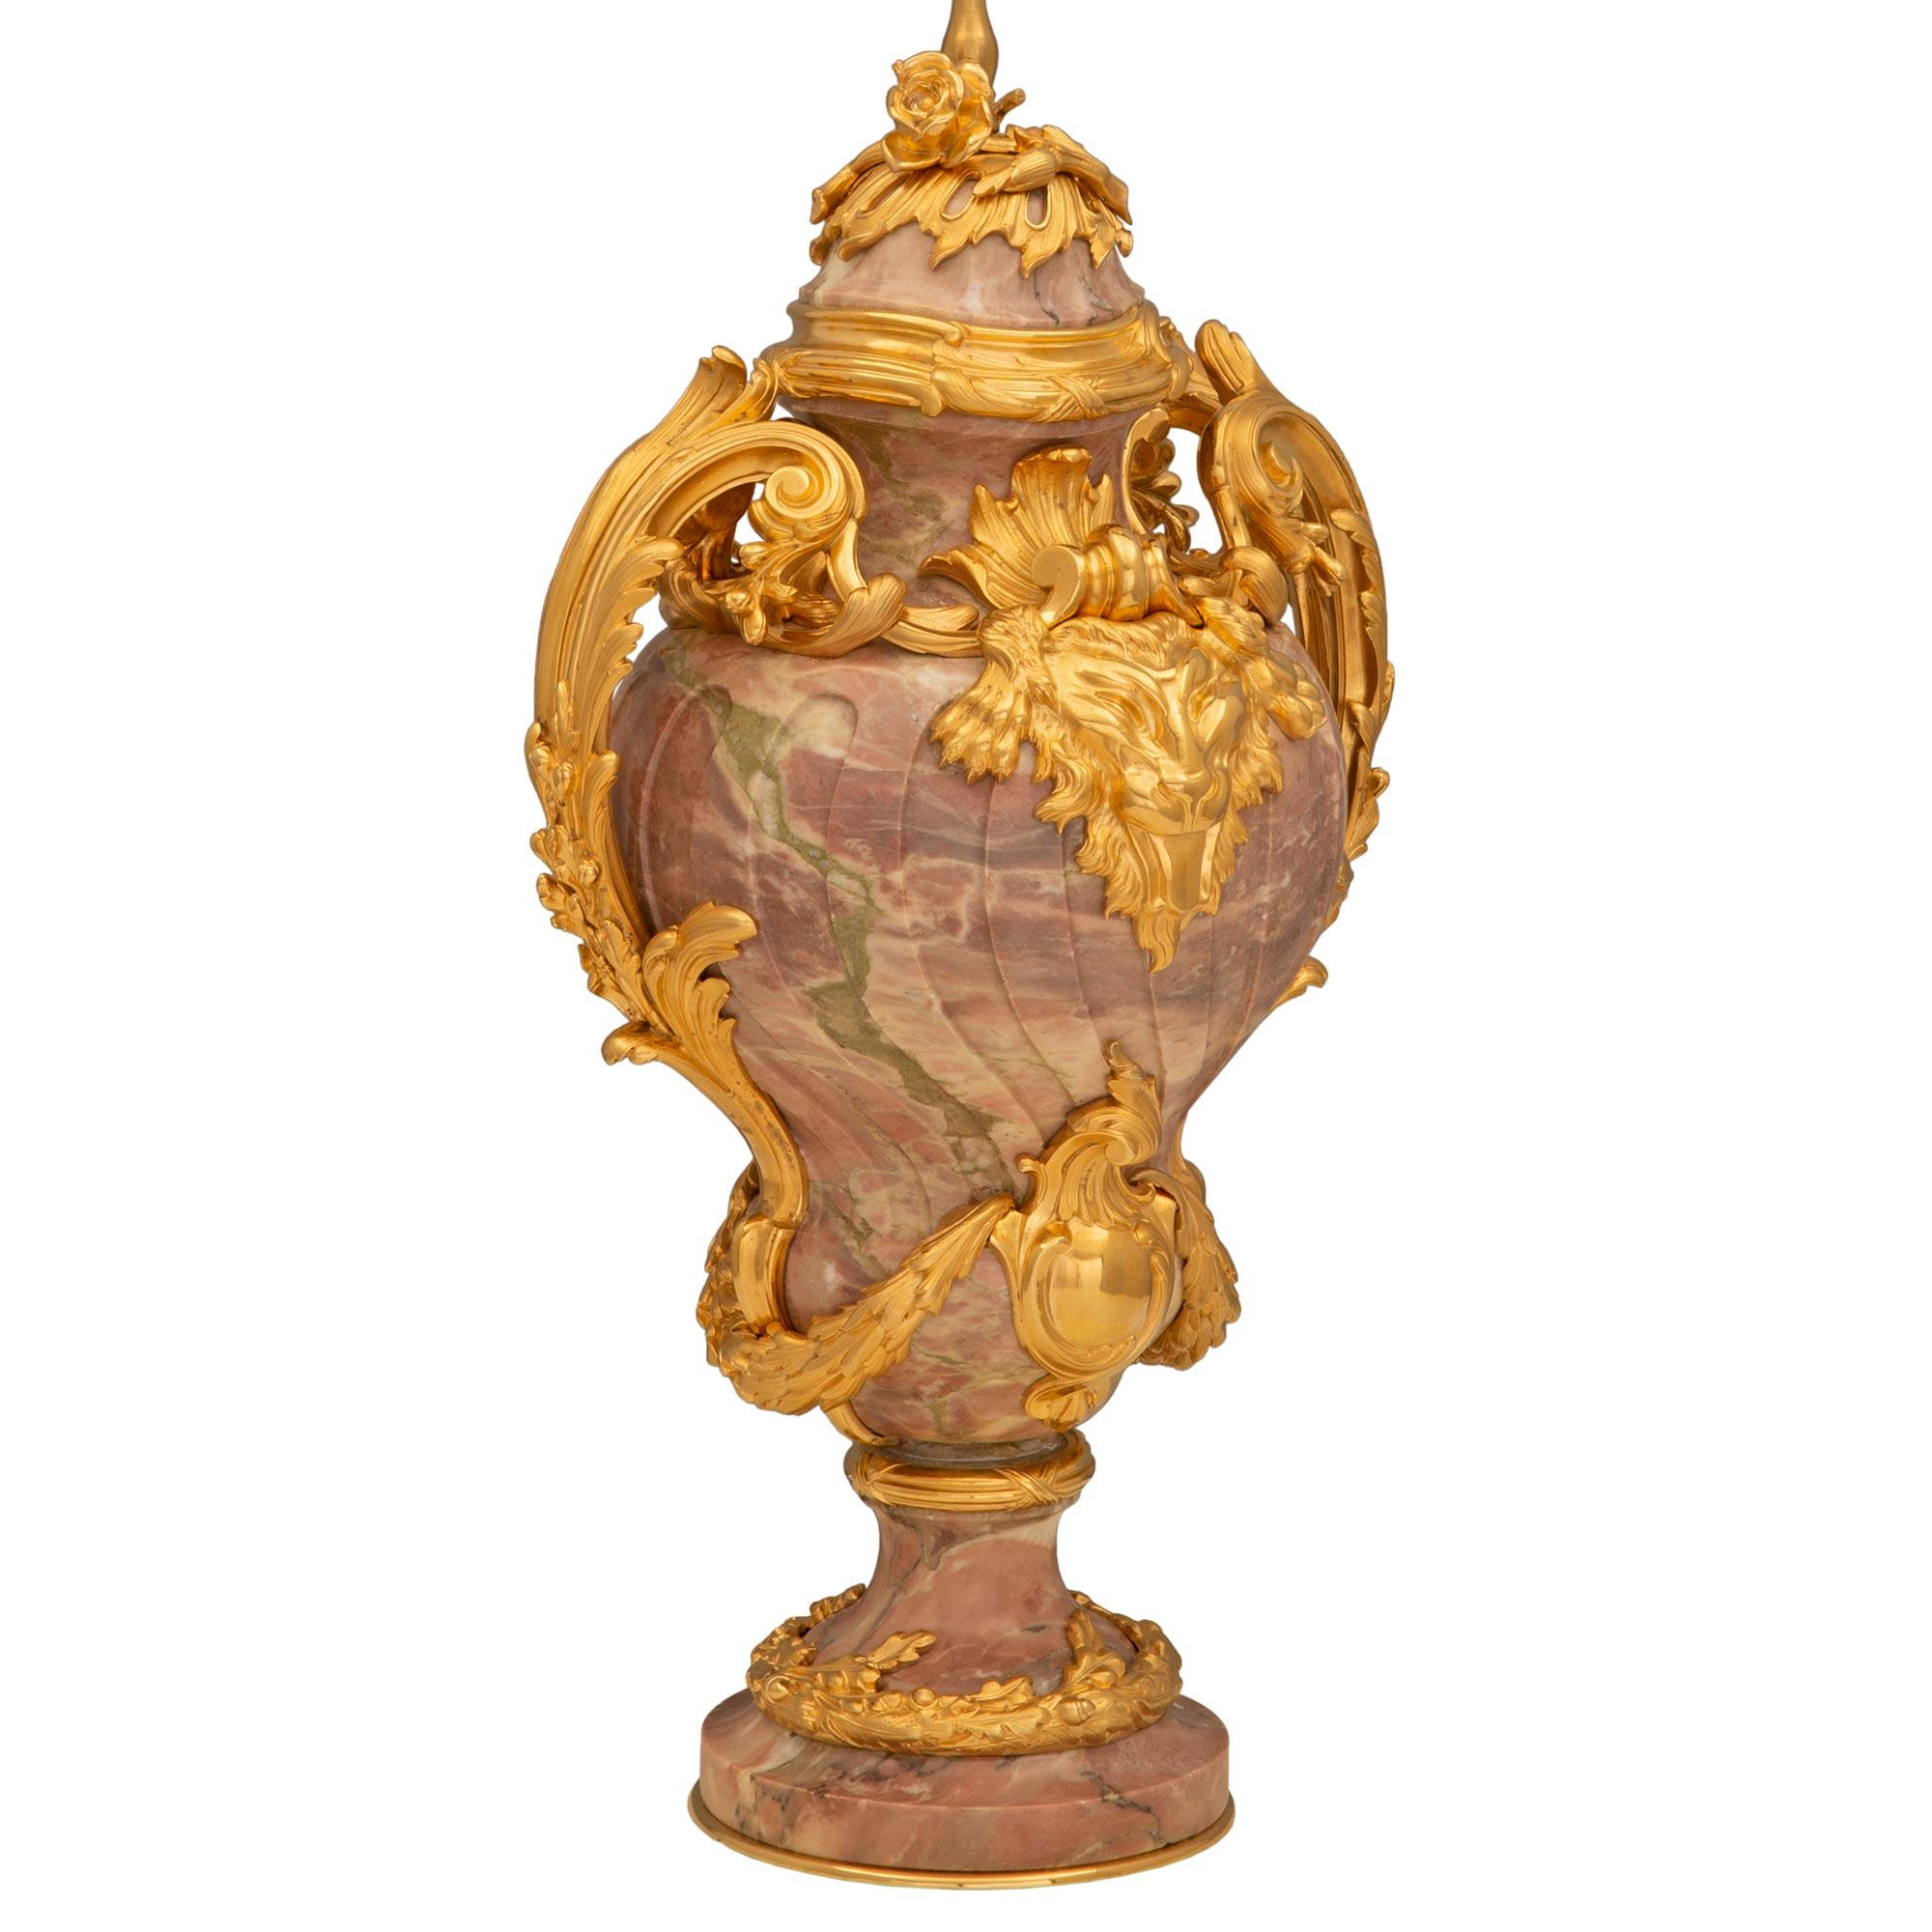 Magnifique lampe en bronze doré et marbre Brèche Violette de style Louis XVI du XIXe siècle. La lampe est surmontée d'une élégante base circulaire à la forme joliment incurvée, d'un fin filet inférieur en bronze doré et d'un remarquable bandeau